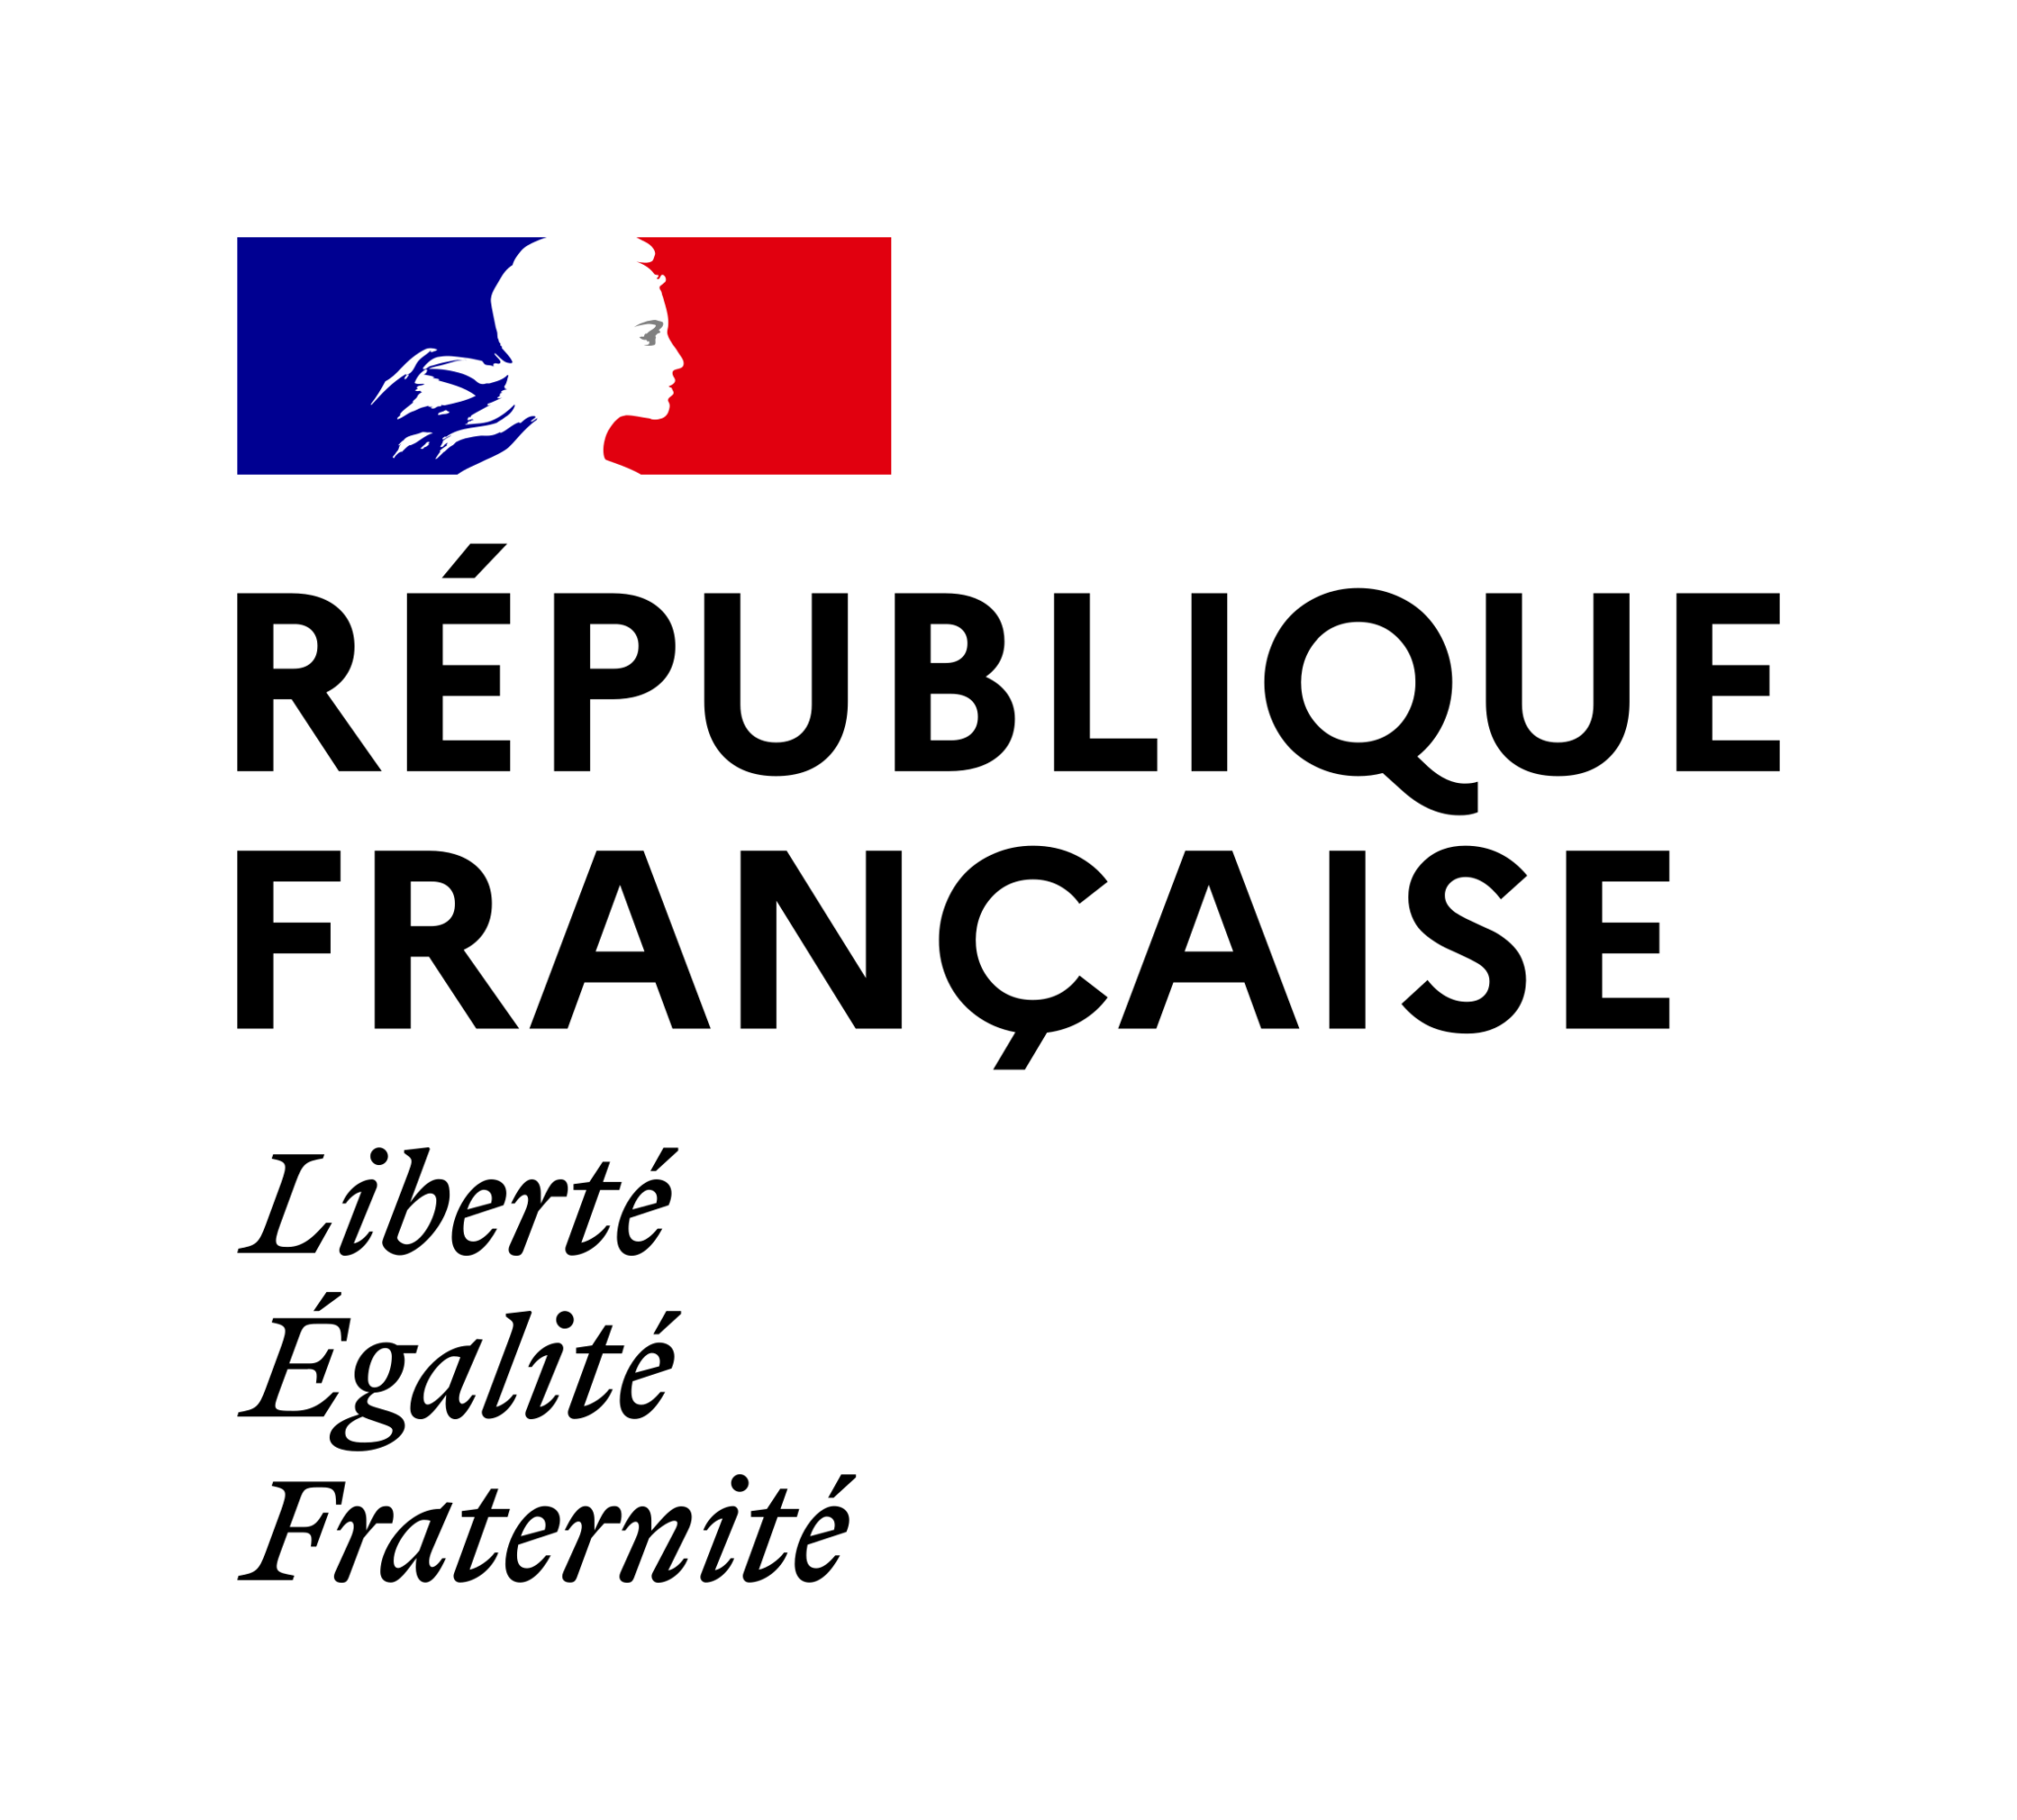 Republique francaise logo.svg 